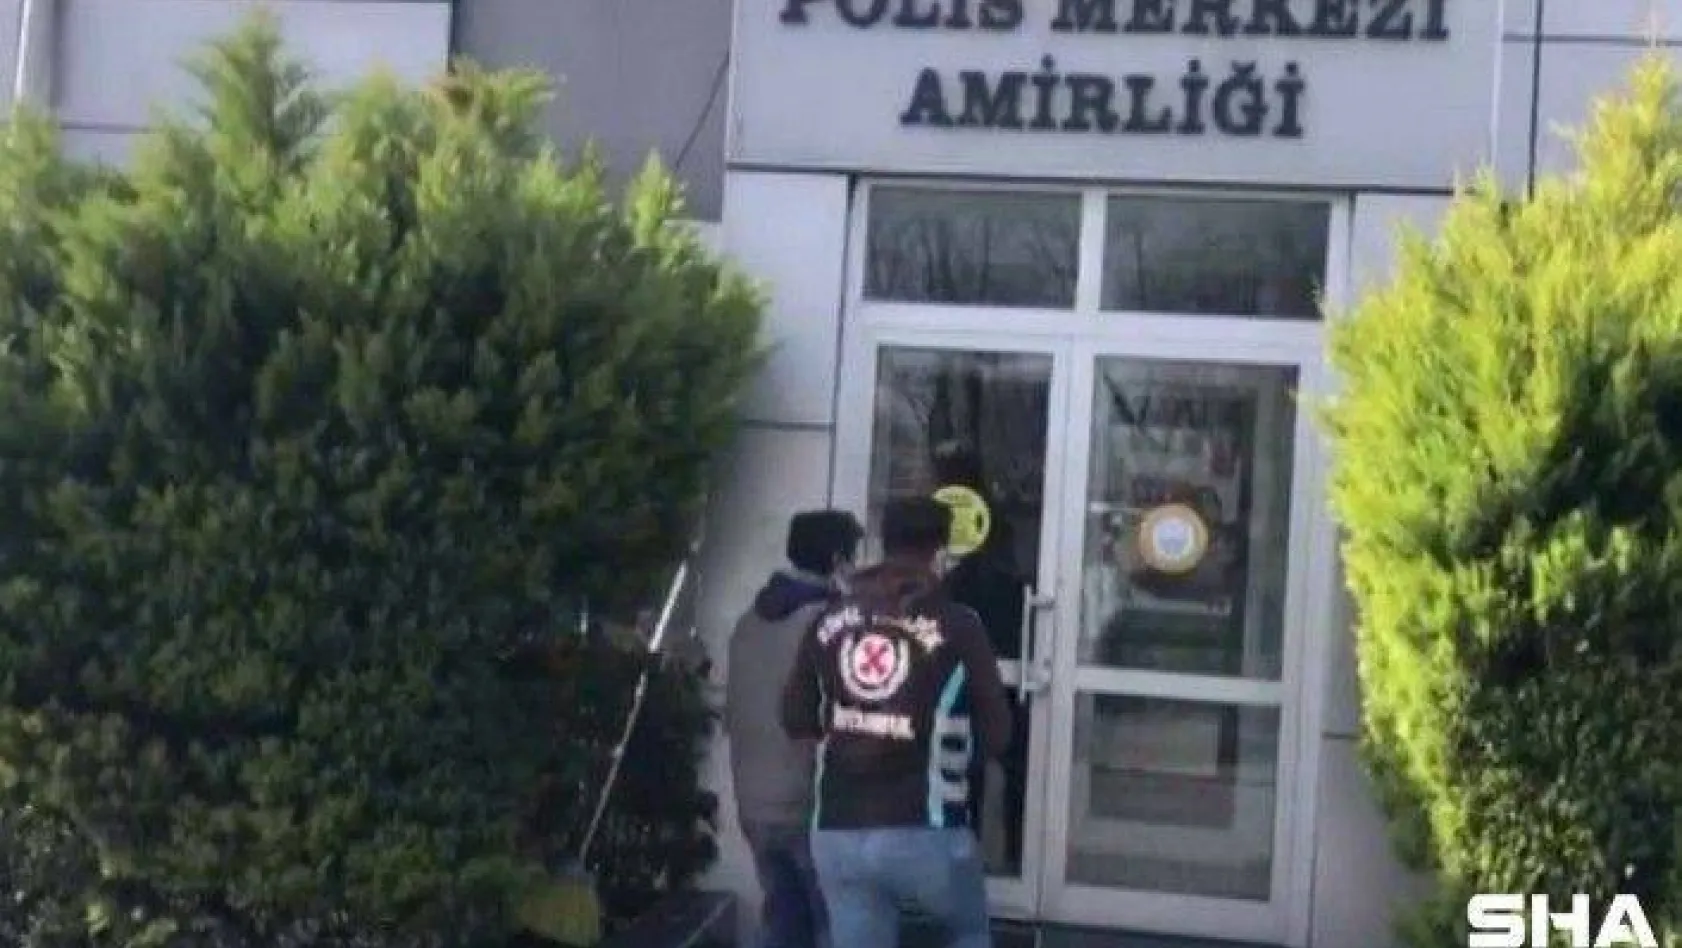 Kadıköy'de polisten para isteyen değnekçi yakayı ele verdi